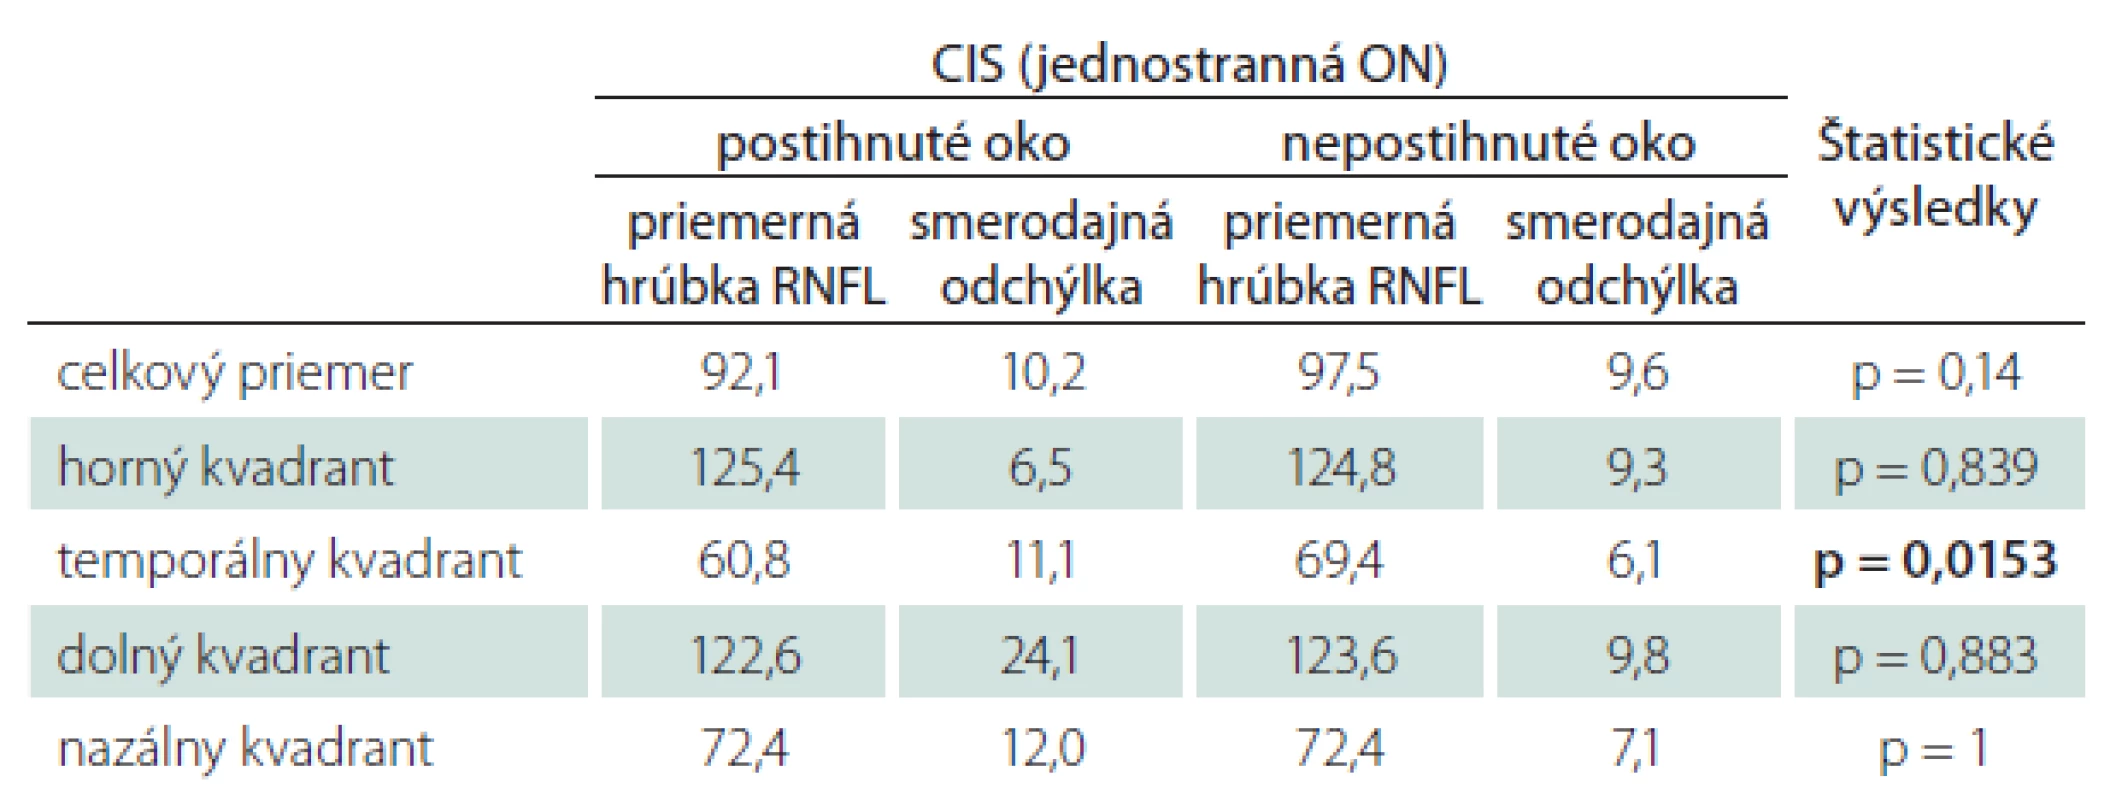 Priemerné hodnoty hrúbky RNFL u pacientov s CIS po ON, porovnanie postihnutého s nepostihnutým okom toho istého súboru pacientov – štatistické spracovanie.